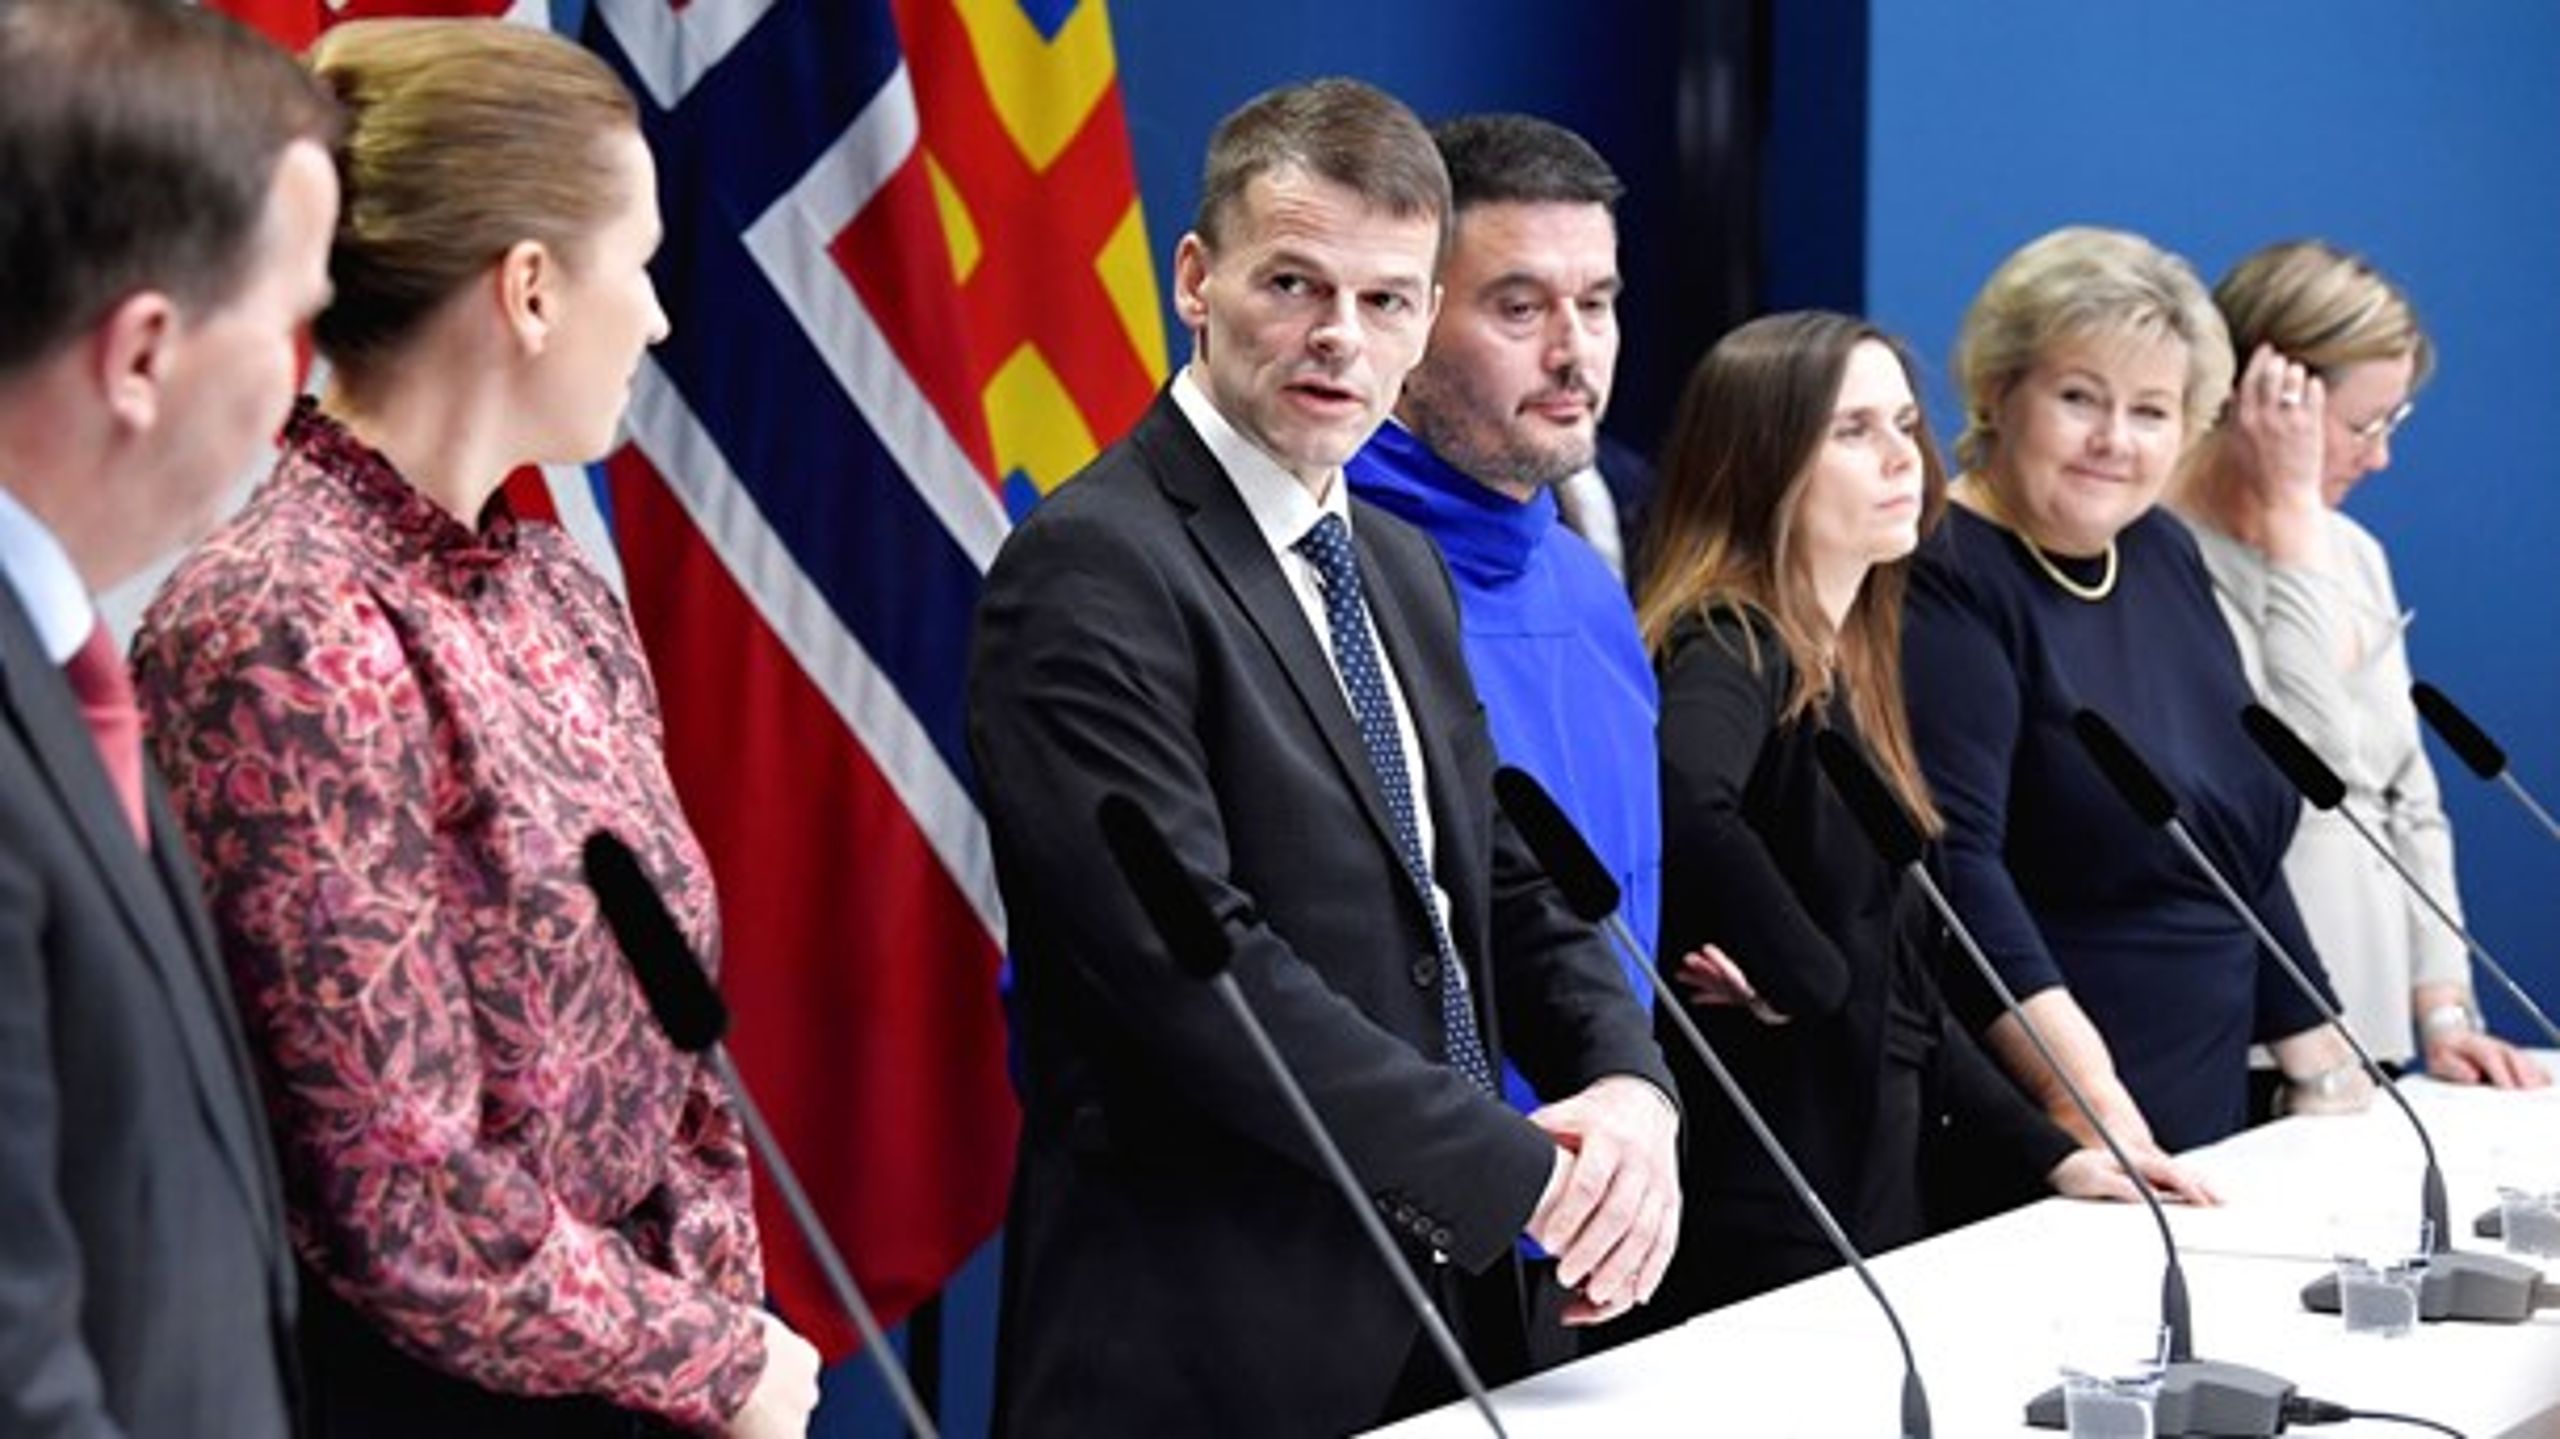 Danmarks statsminister Mette Frederiksen (nr. 2 fra venstre), Færøernes lagmand, Bárður á Steig Nielsen (nr. tre fra venstre), og Grønlands landsstyreformand, Kim Kielsen (nr. fire fra venstre), til møde i Nordisk Råd i oktober 2019 sammen med ledere fra de øvrige nordiske lande.